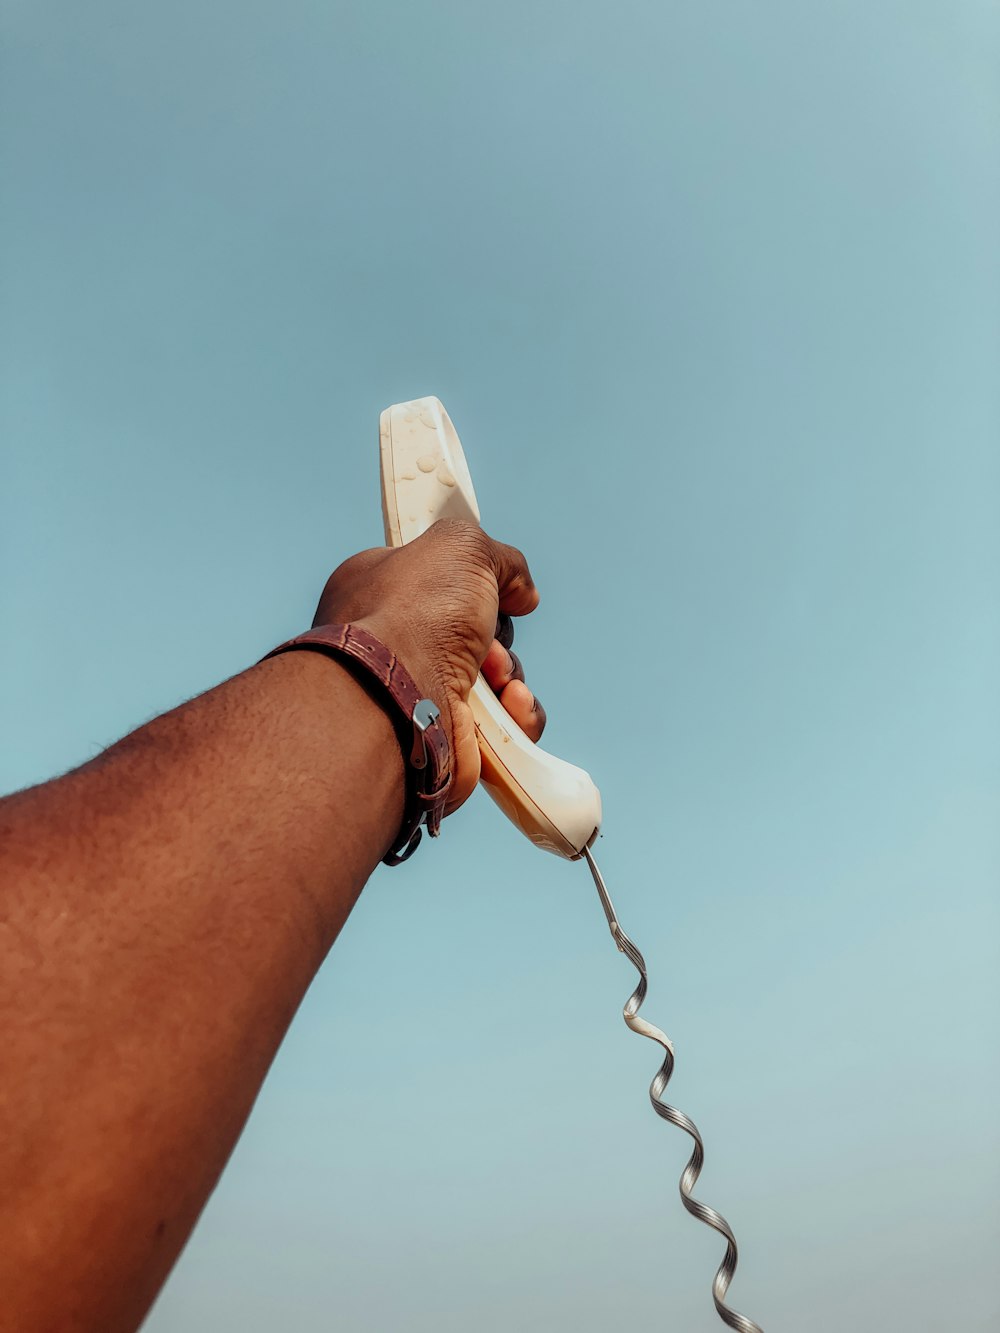 Persona sosteniendo un teléfono blanco con cable